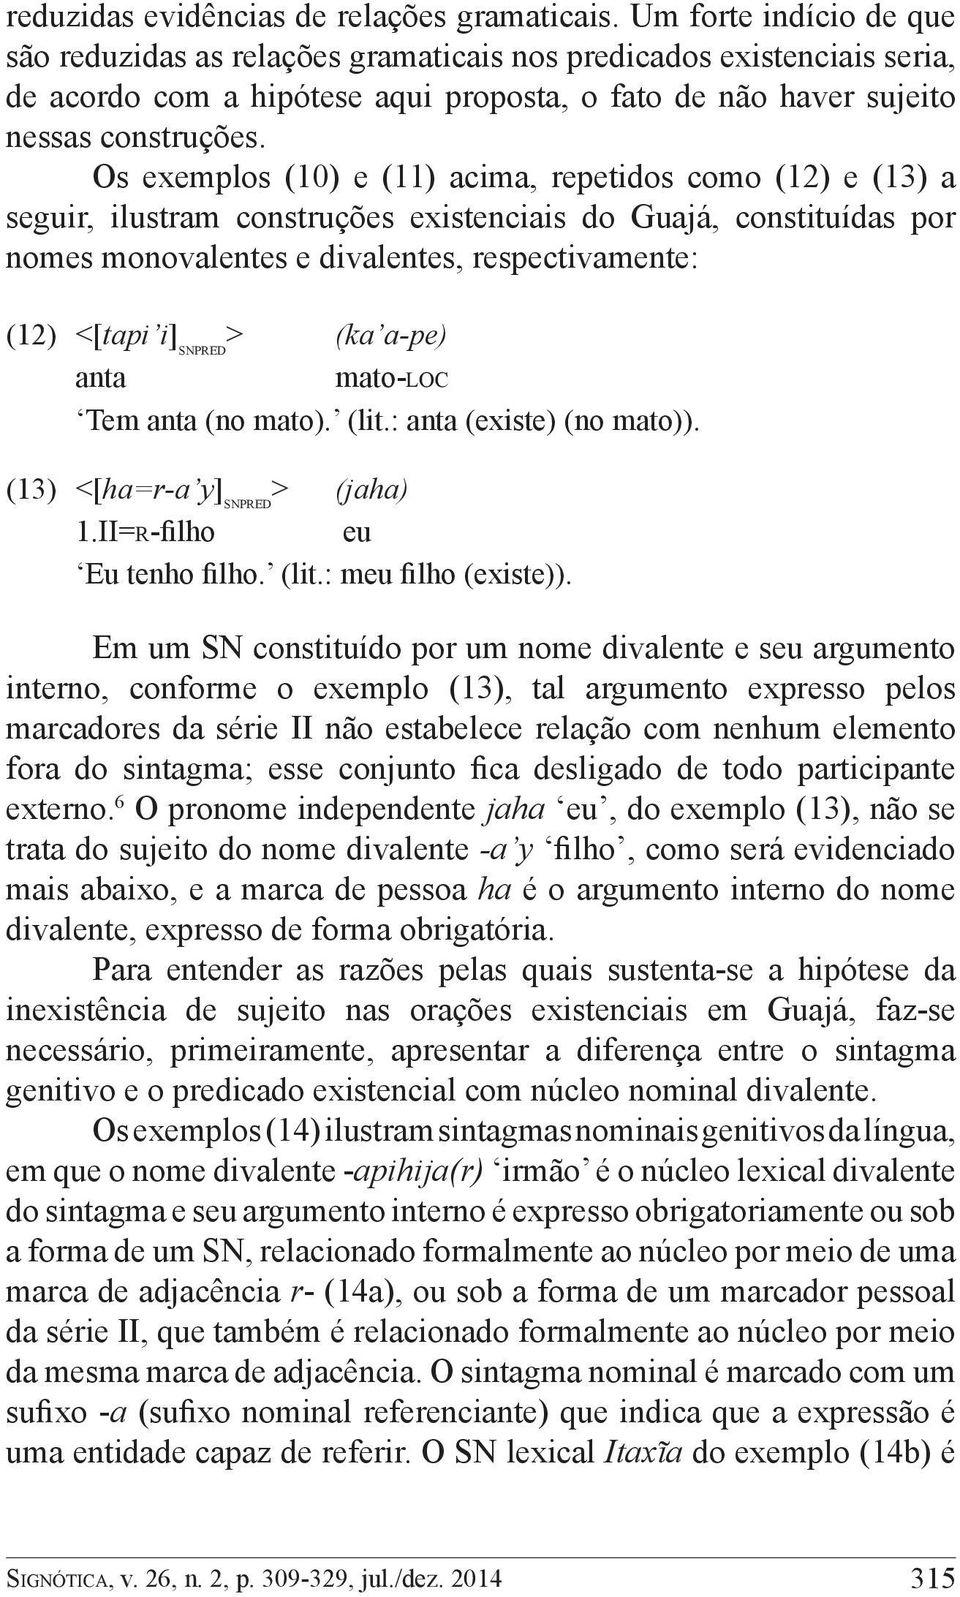 Os exemplos (10) e (11) acima, repetidos como (12) e (13) a seguir, ilustram construções existenciais do Guajá, constituídas por nomes monovalentes e divalentes, respectivamente: (12) <[tapi i]